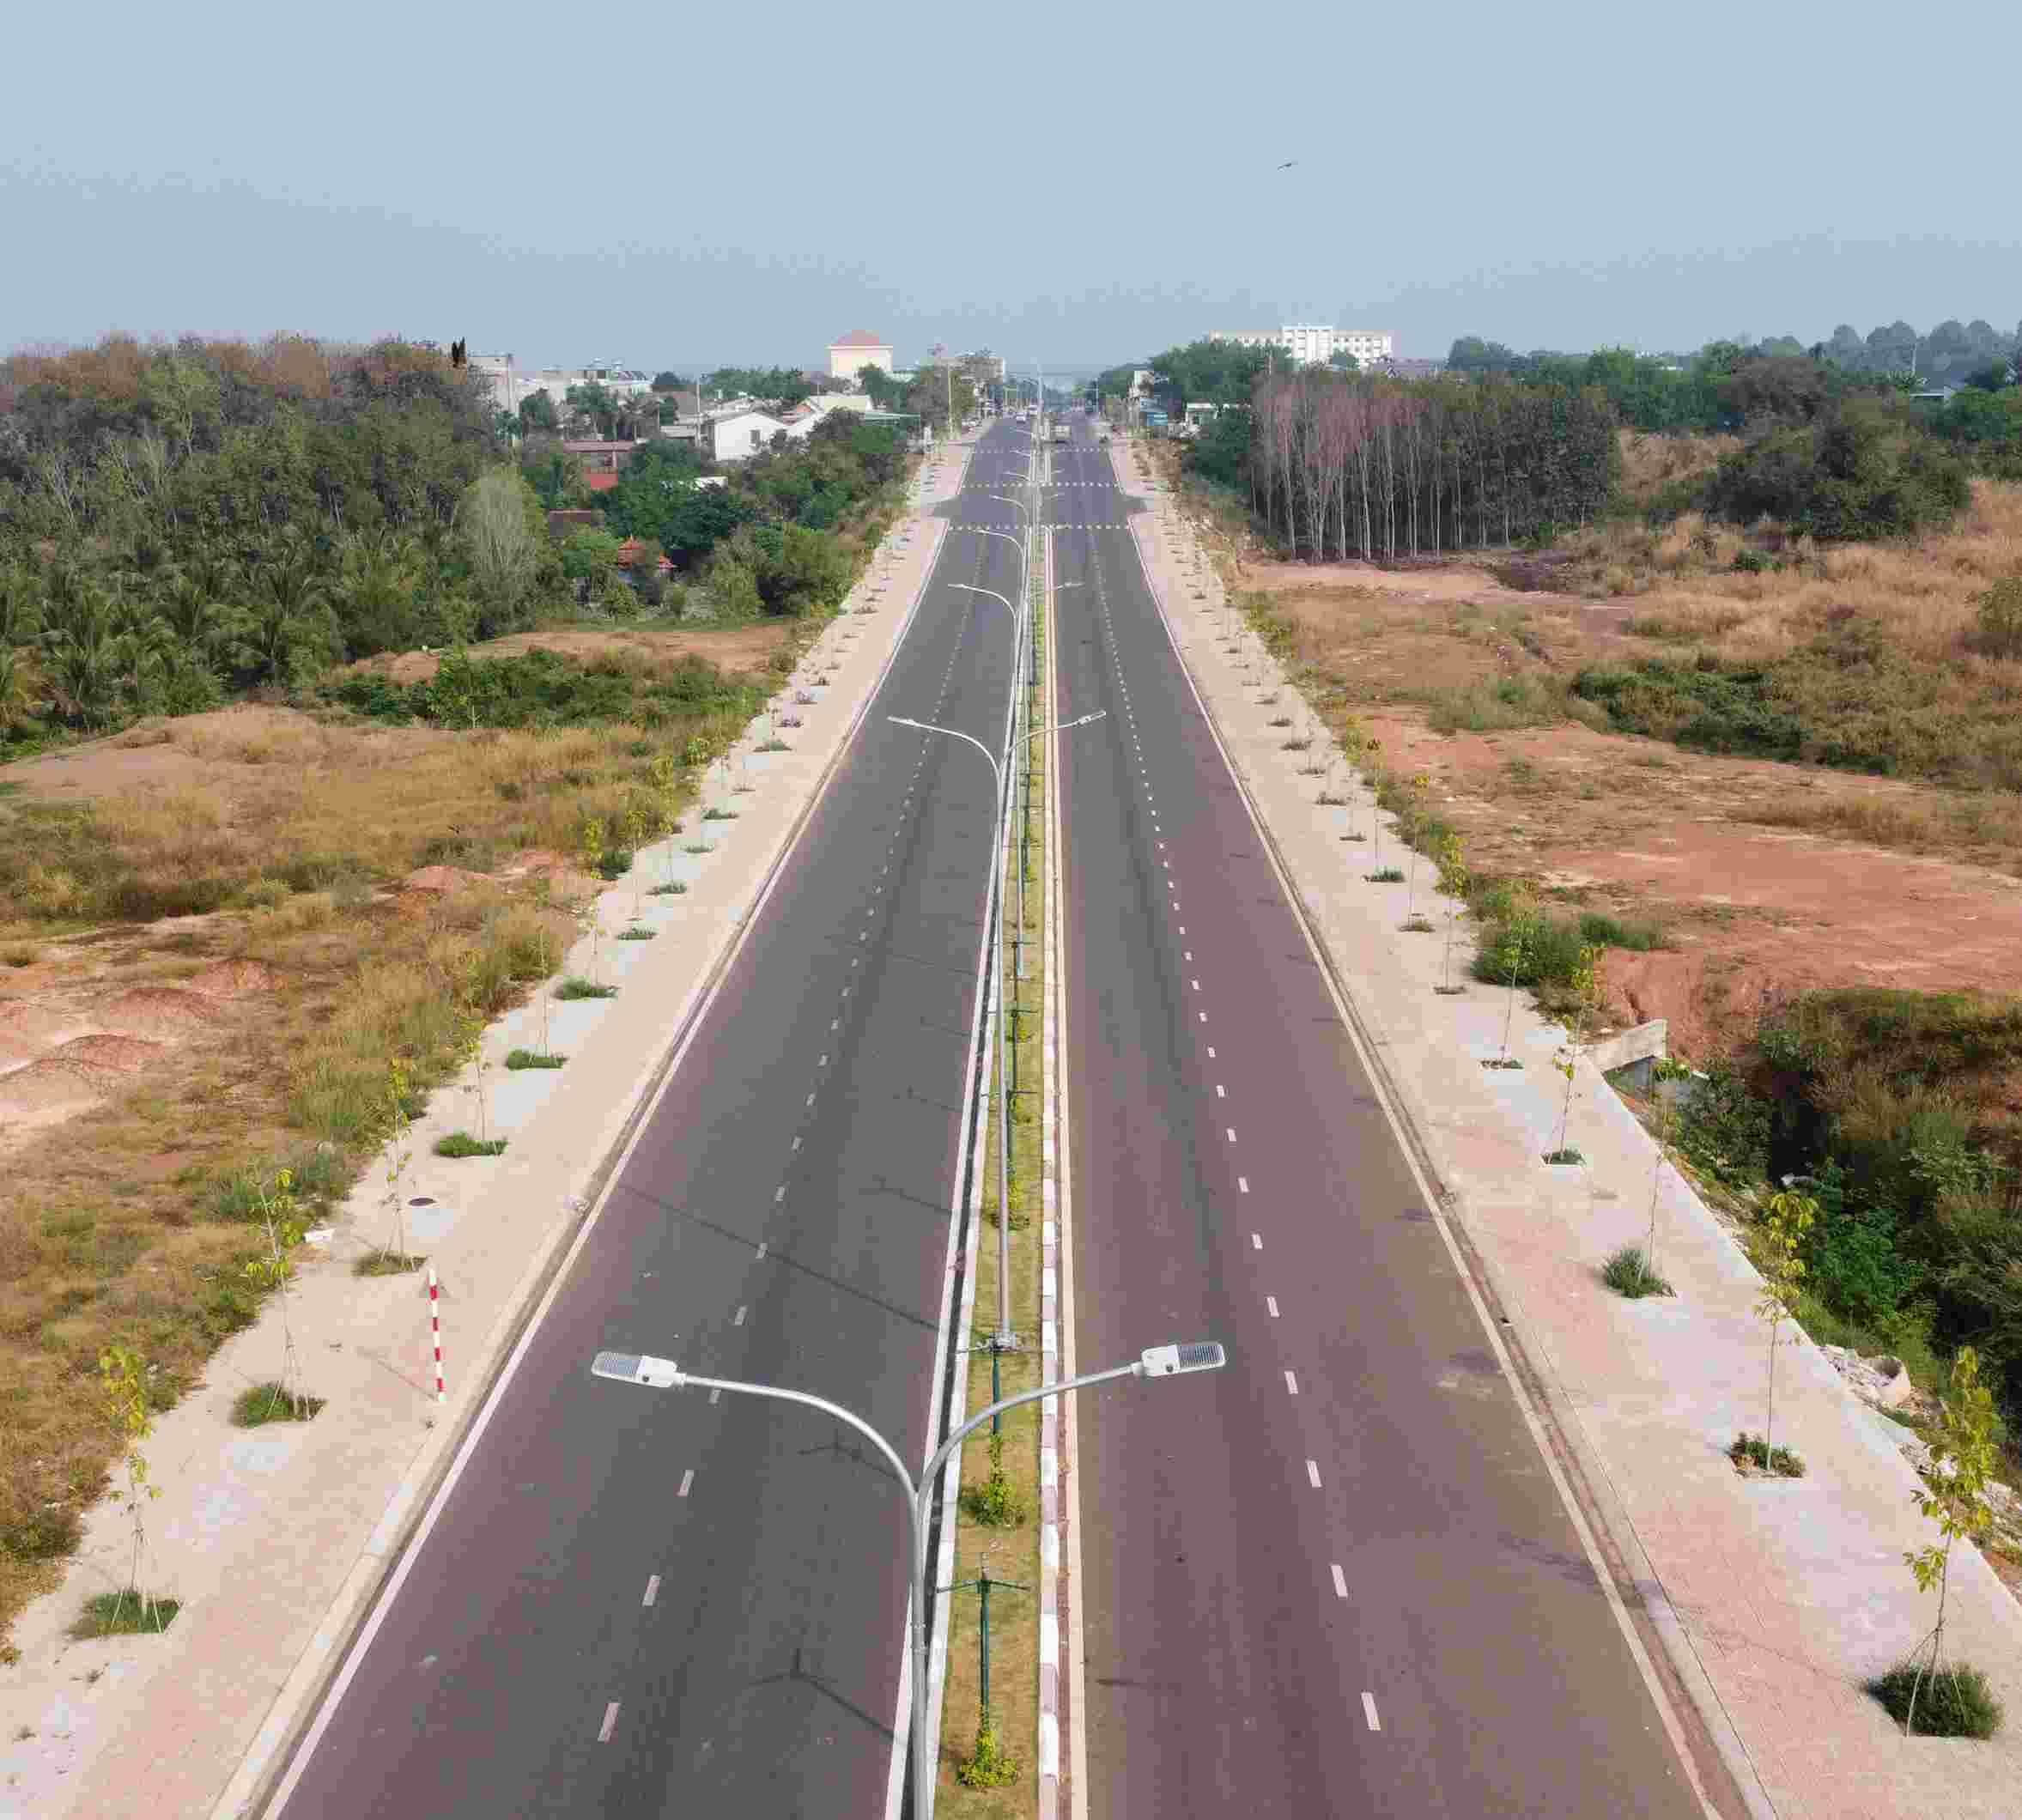 UBND tỉnh Bình Phước cho biết, đây là tuyến đường xây dựng mới dài gần 1,5km với vốn đầu tư khoảng 60 tỉ đồng.